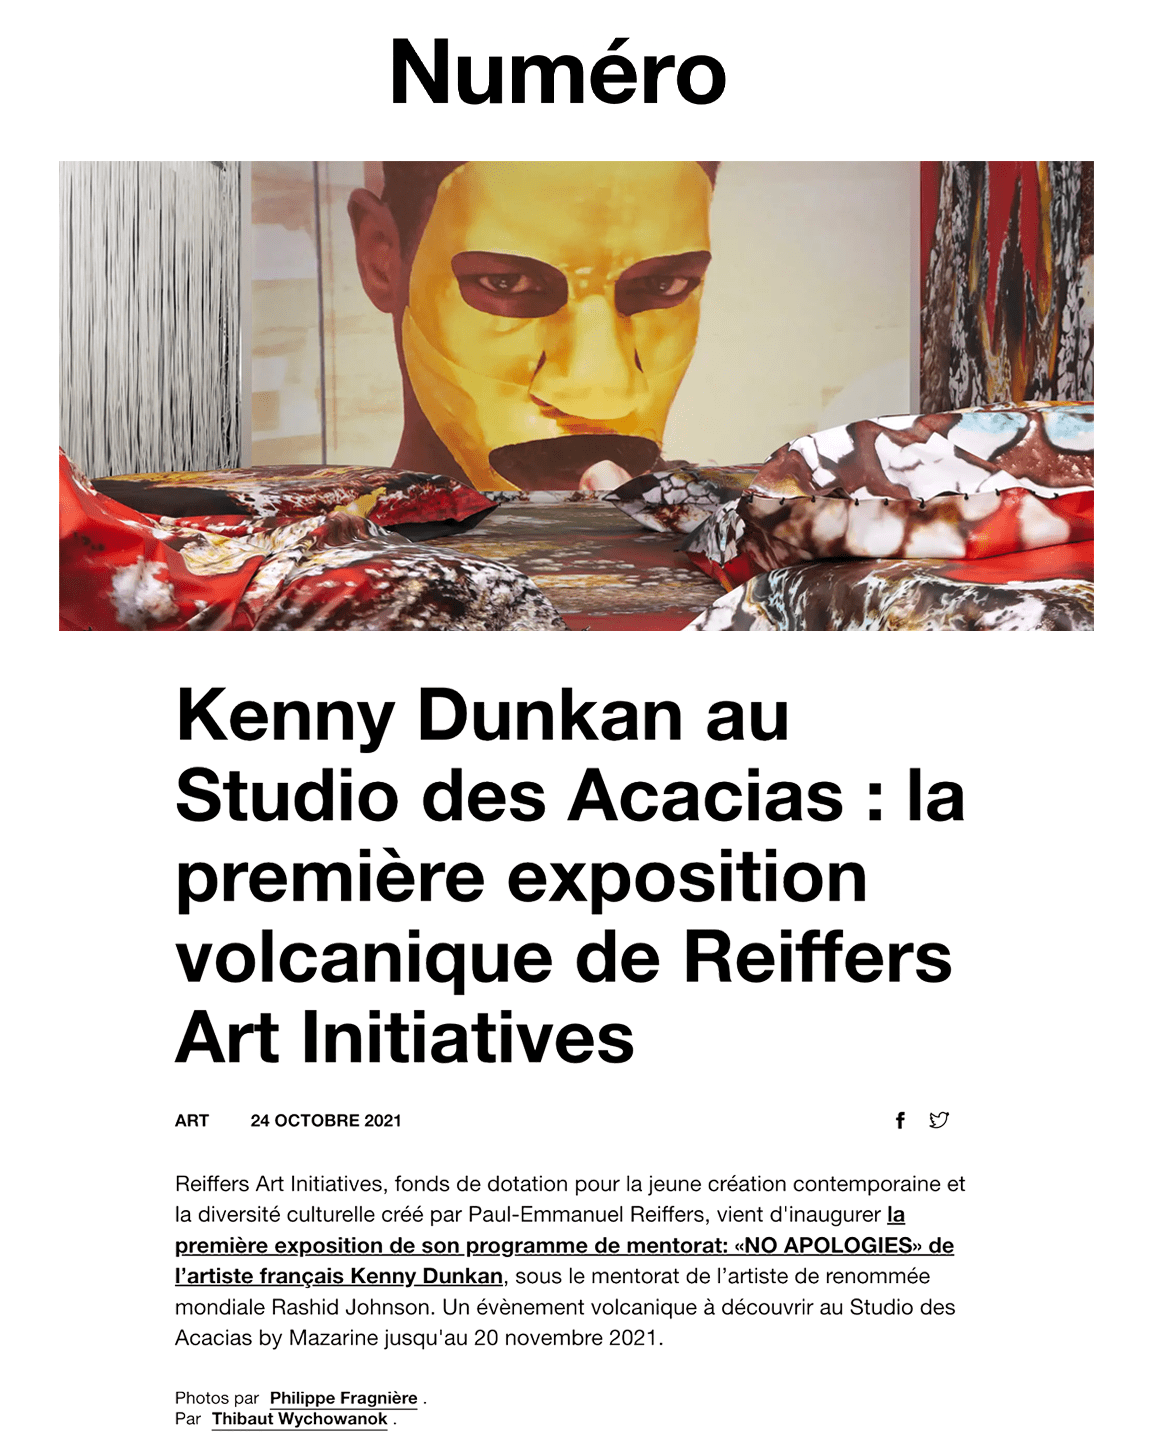 Kenny Dunkan au Studio des Acacias : la première exposition volcanique de Reiffers Art Initiatives